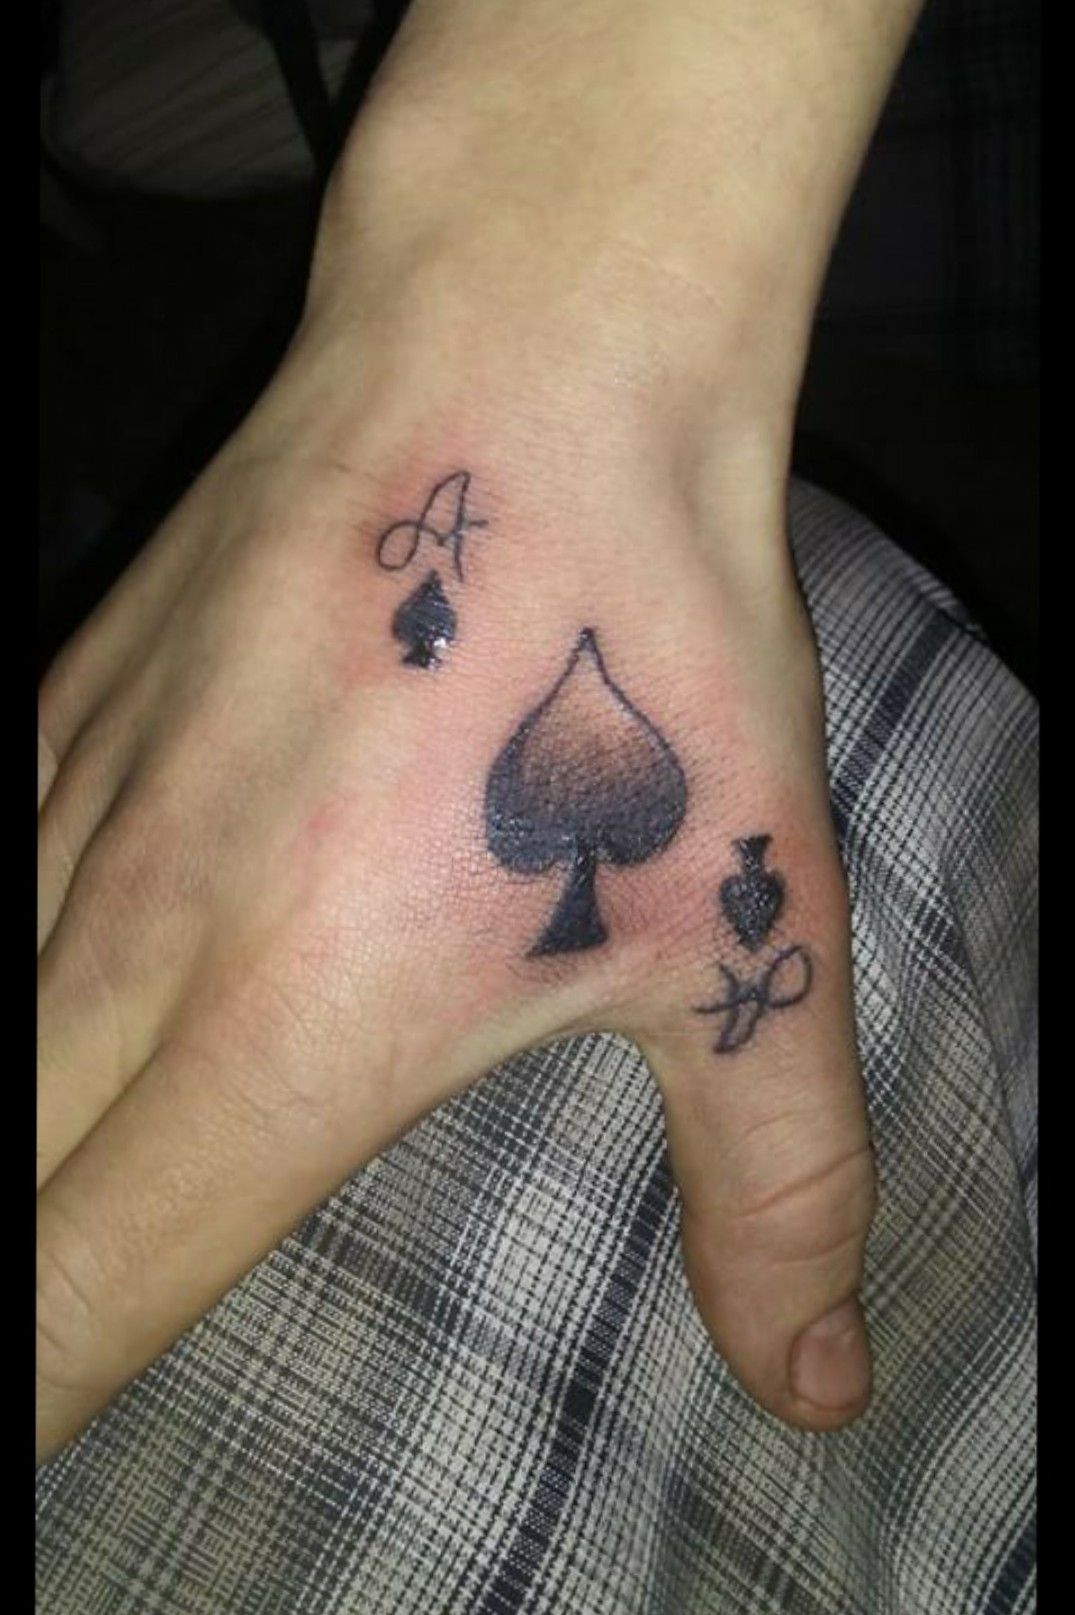 Ace of spades tattoo  Tattoogridnet